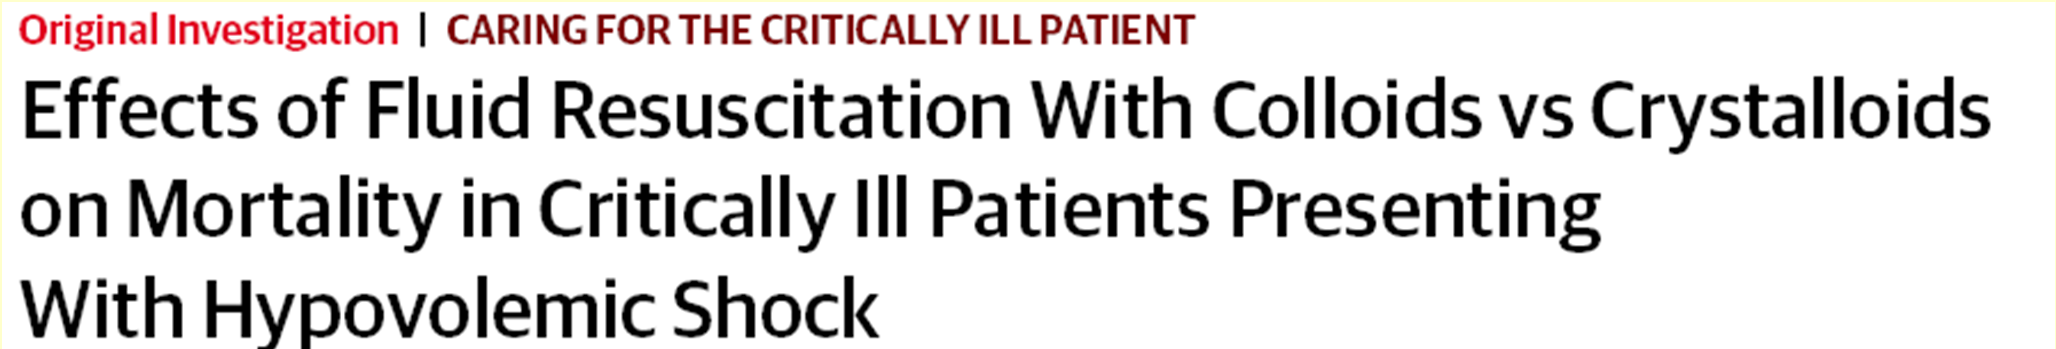 JAMA. 2013 Nov 6;310(17):1809-17 mrct (nyílt) 2857 beteg Súlyos hipovolémiával IBO-ra felvéve,megelőző foly.